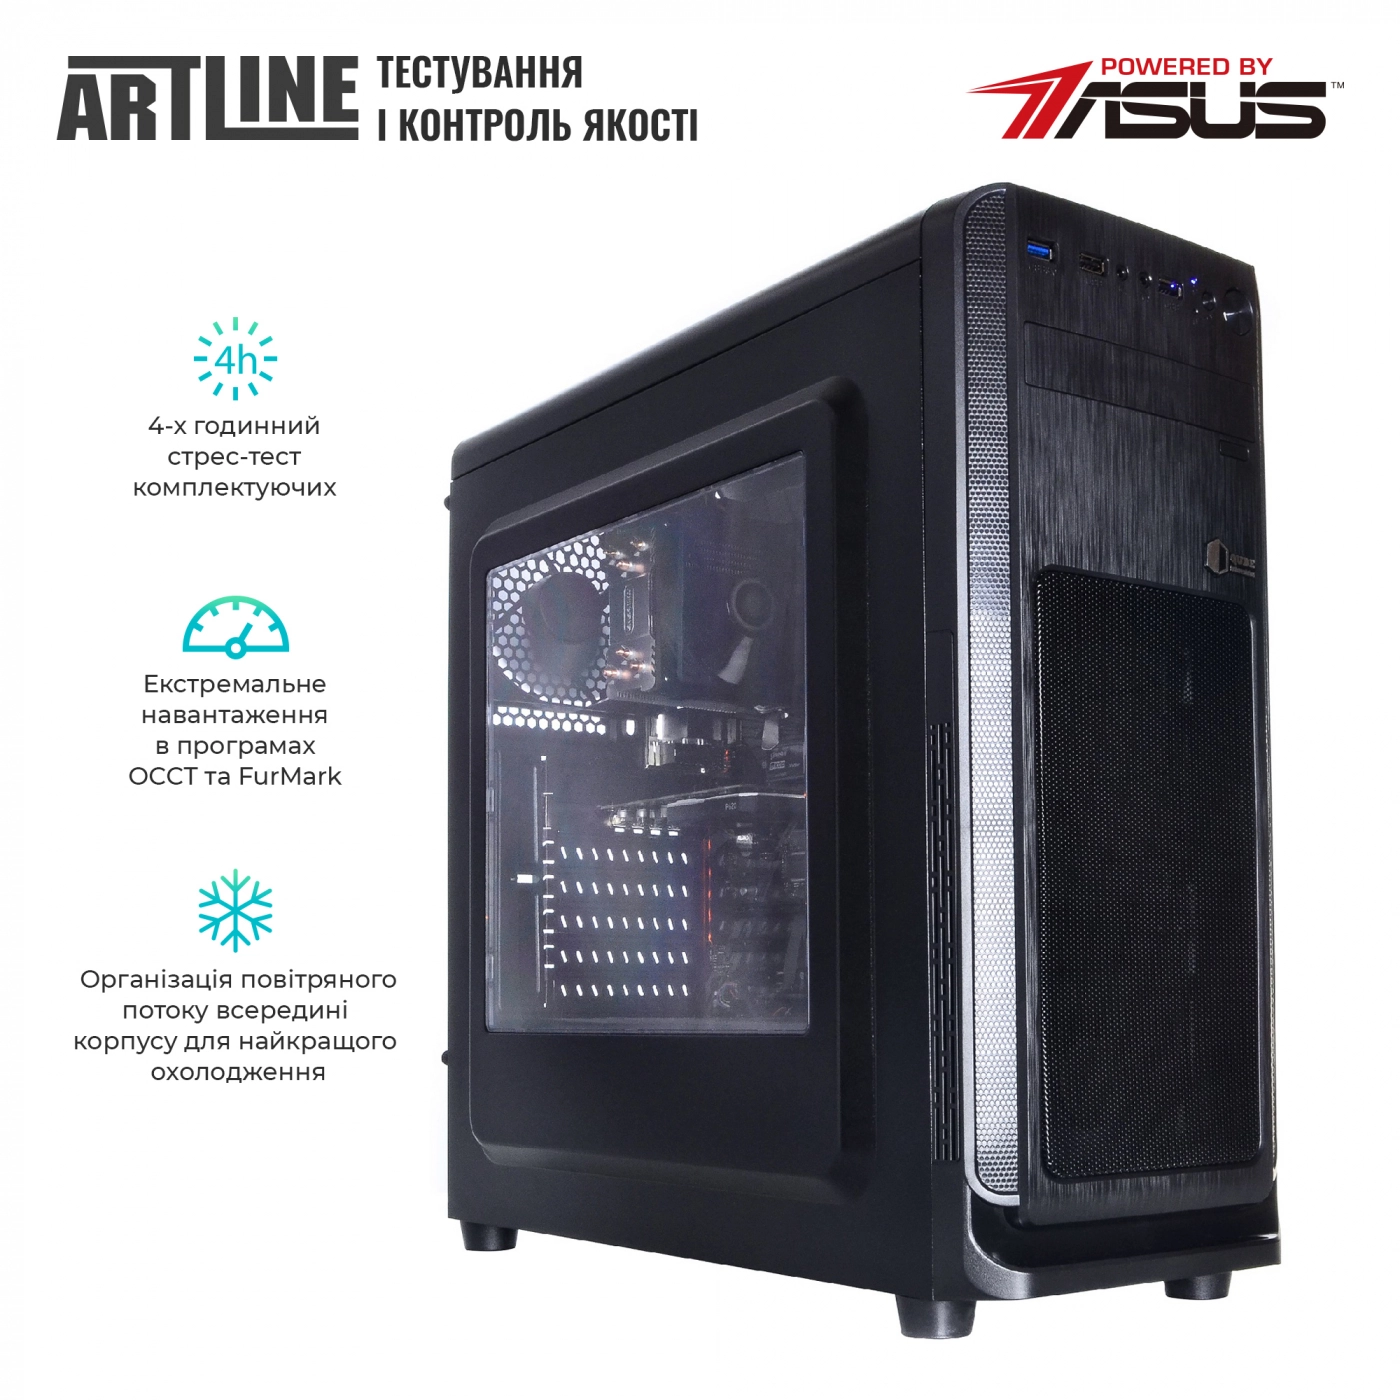 Купить Сервер ARTLINE Business T25v37 - фото 6